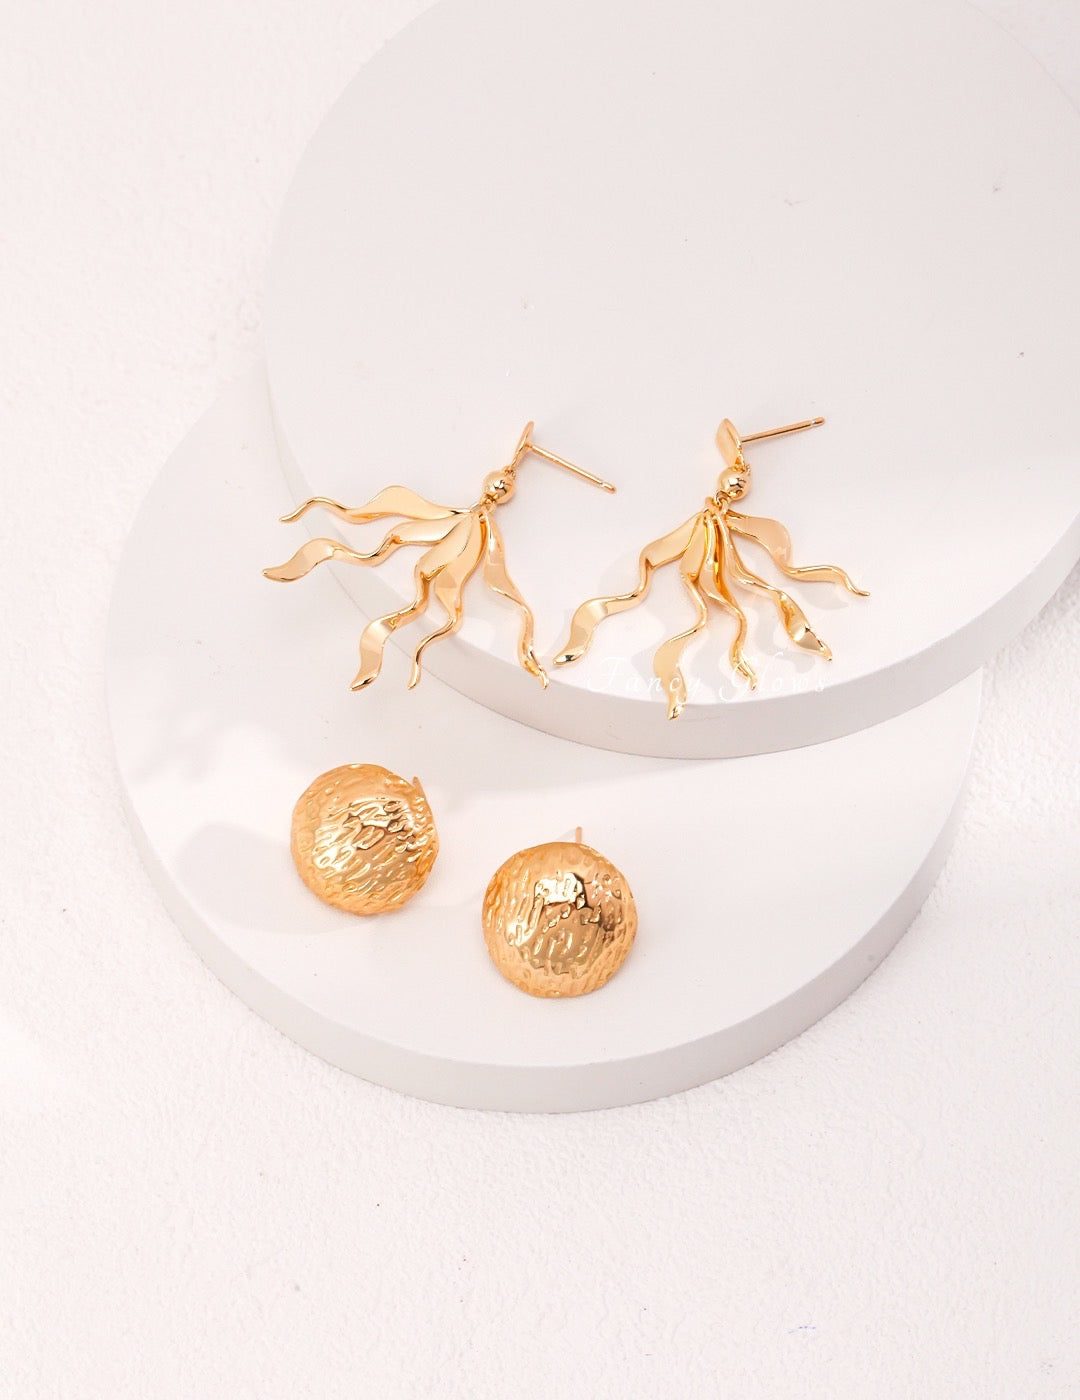 “Flowing golden path” silver earring